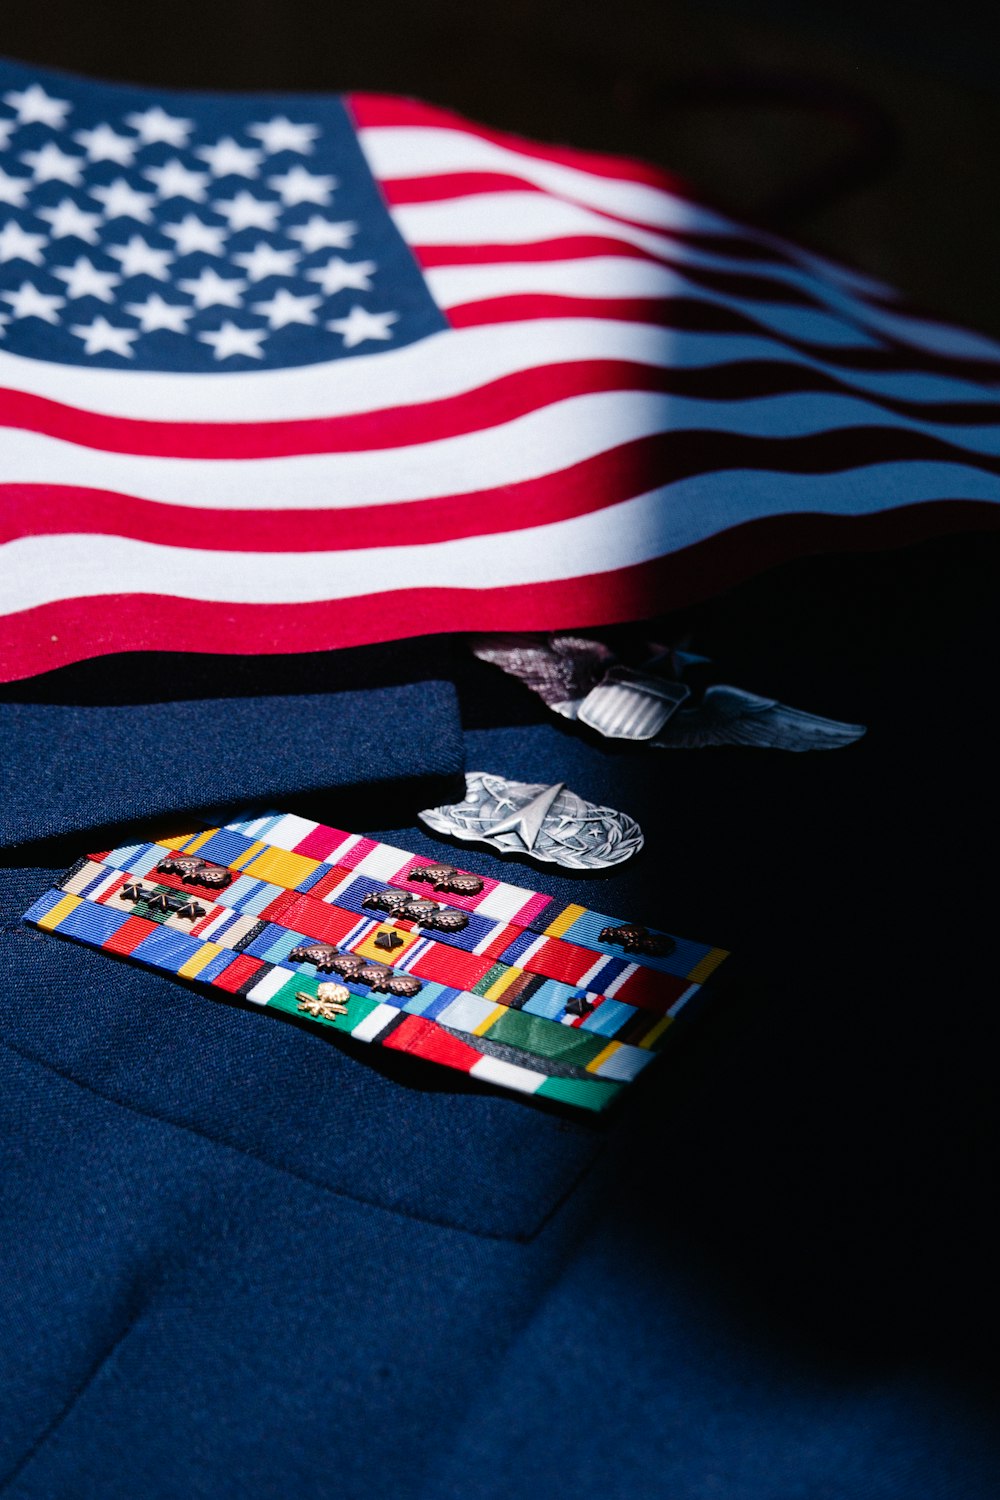 Un drapeau américain posé sur une chemise bleue